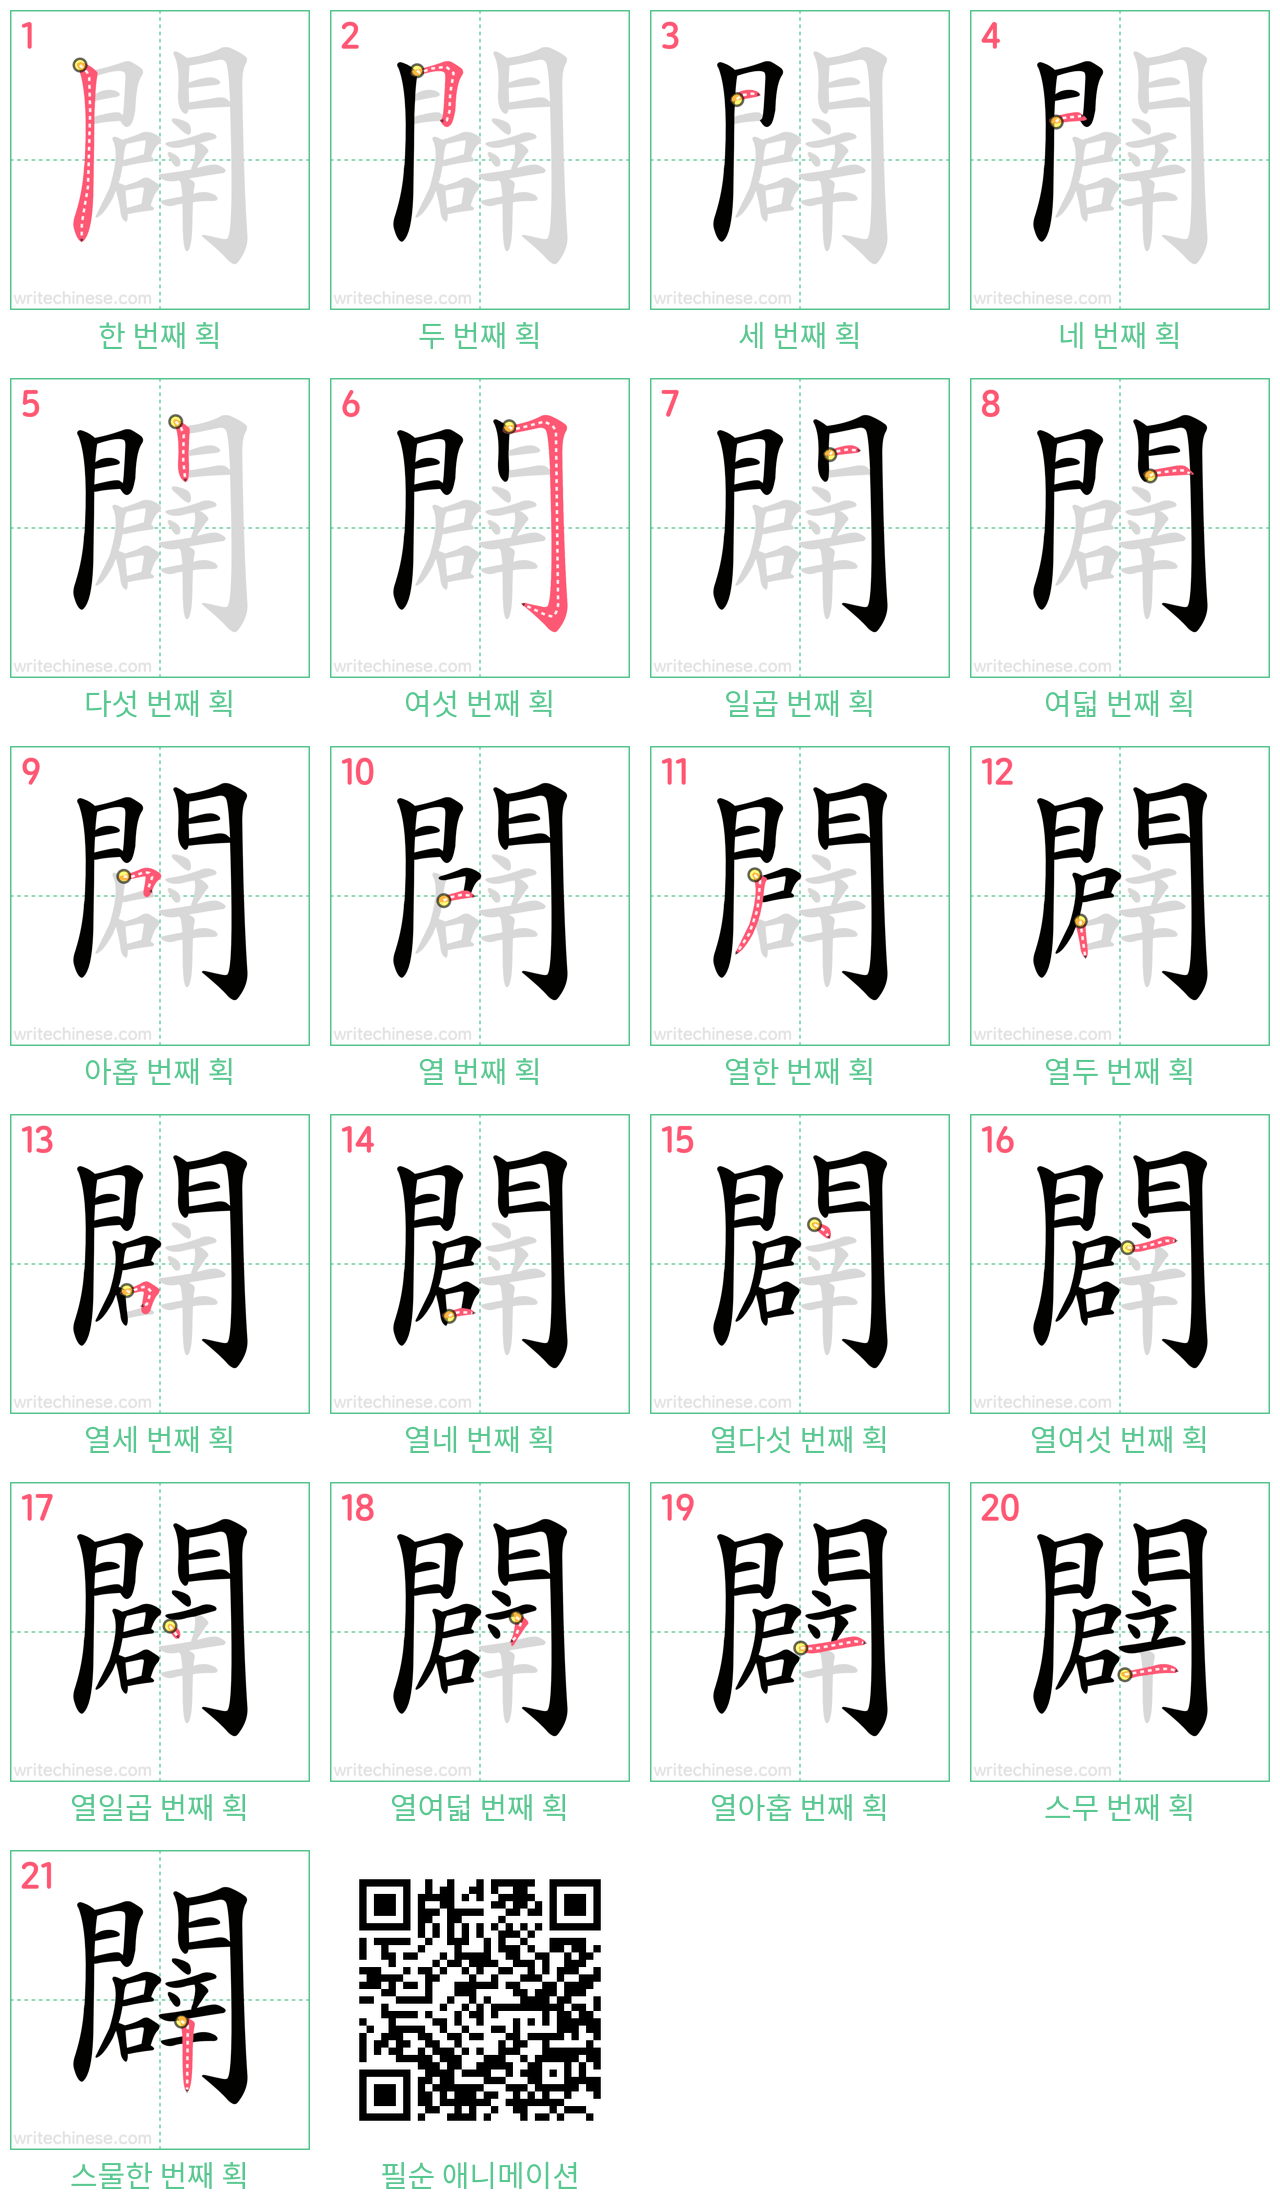 闢 step-by-step stroke order diagrams